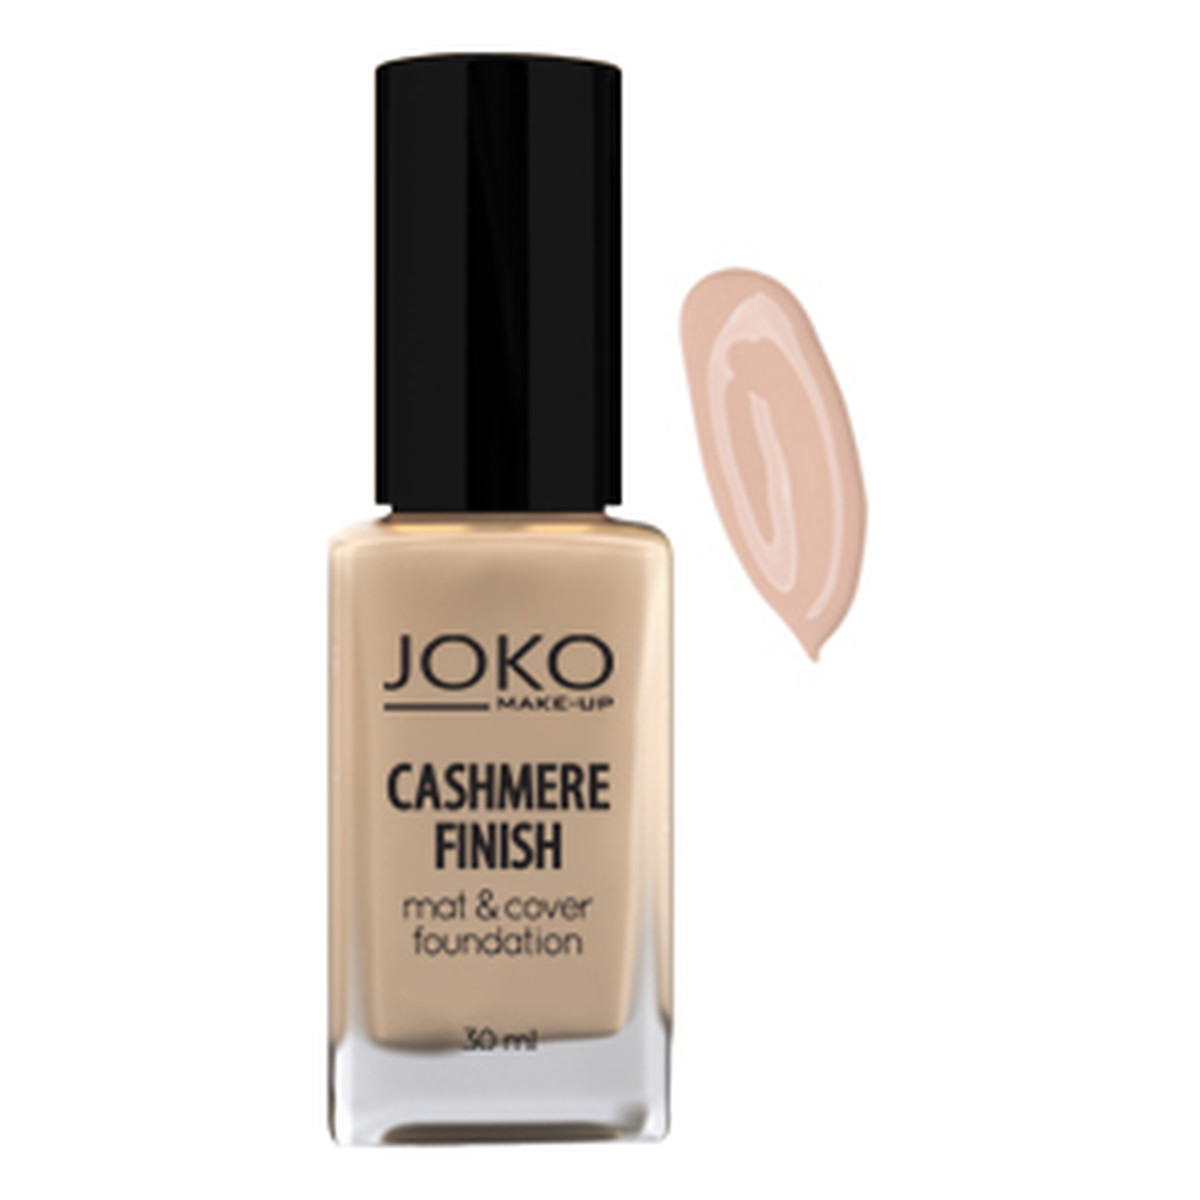 Joko Cashmere Finish Mat & Cover Foundation Kryjący podkład do makijażu 30ml